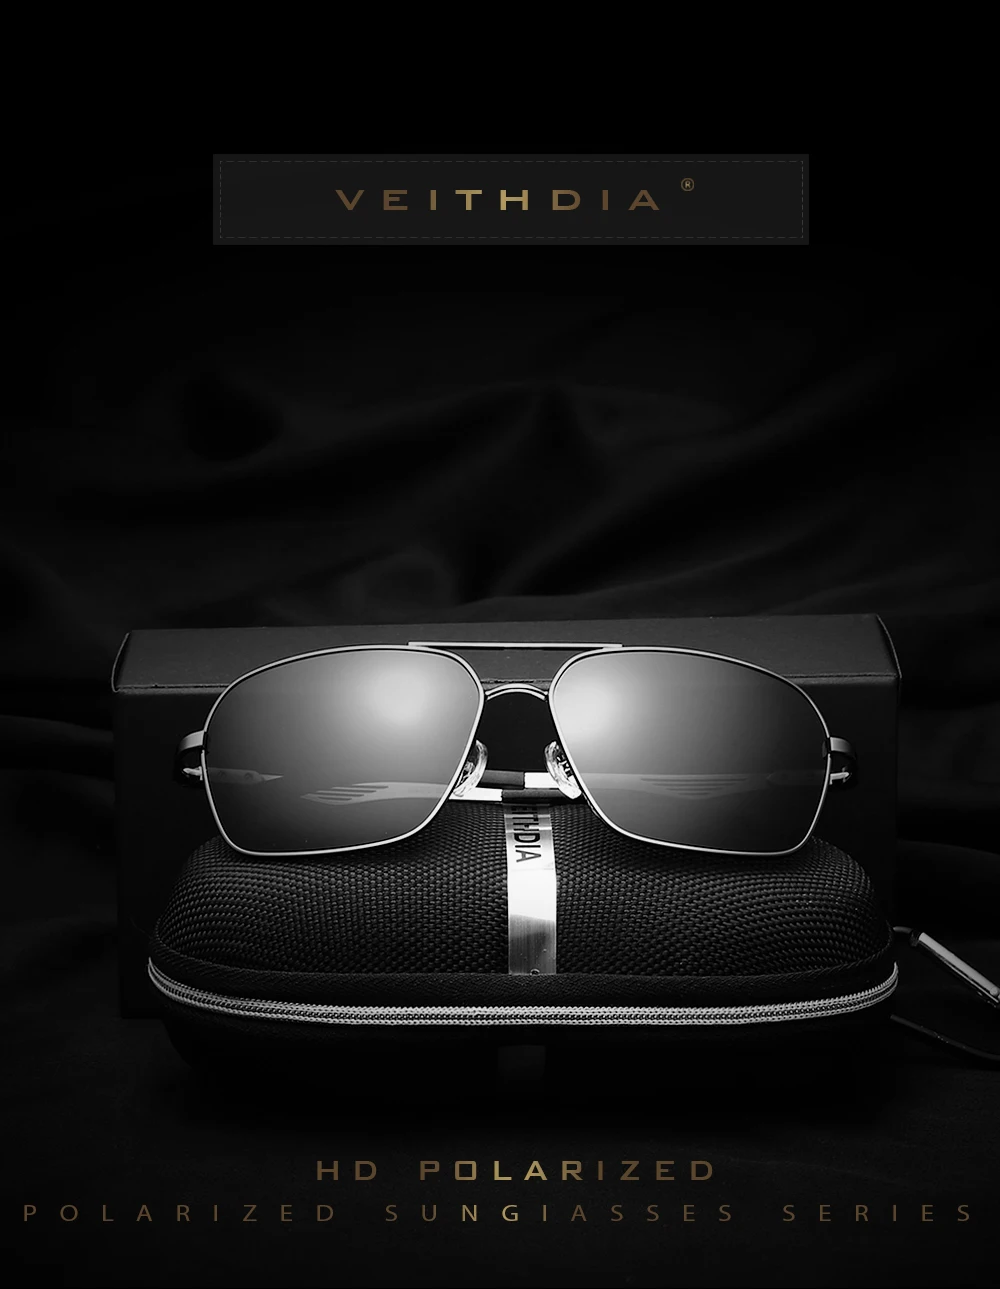 Новинка, бренд VEITHDIA, дизайнерские мужские и женские солнцезащитные очки, поляризационные, зеркальные, винтажные очки, аксессуары, солнцезащитные очки Oculos de sol 2459